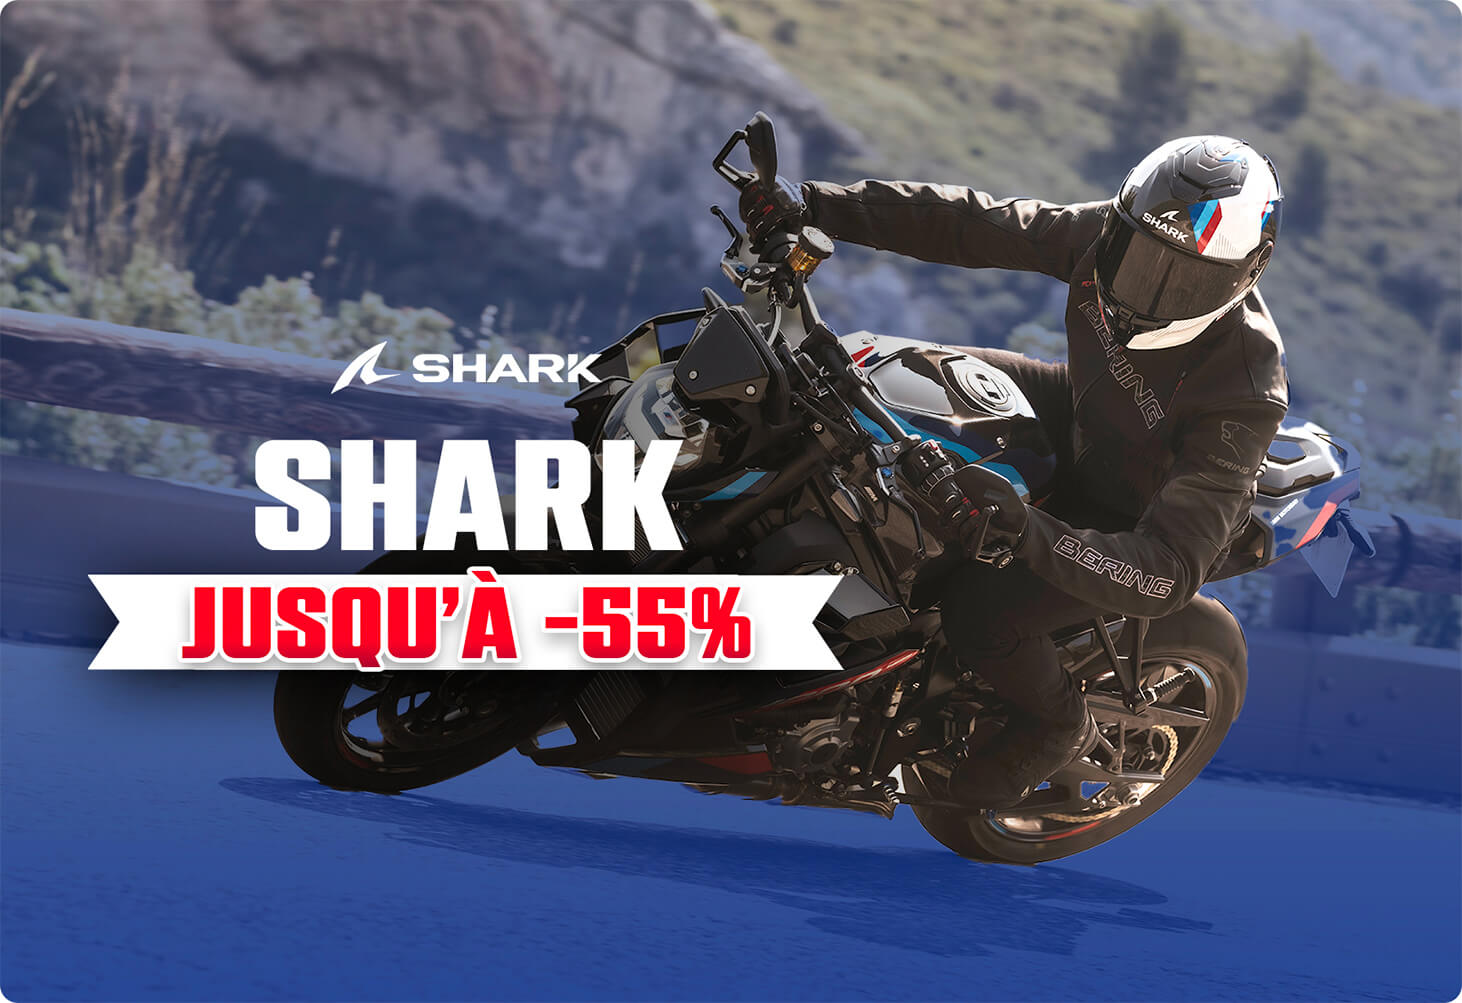 Casques Shark jusqu' -55%